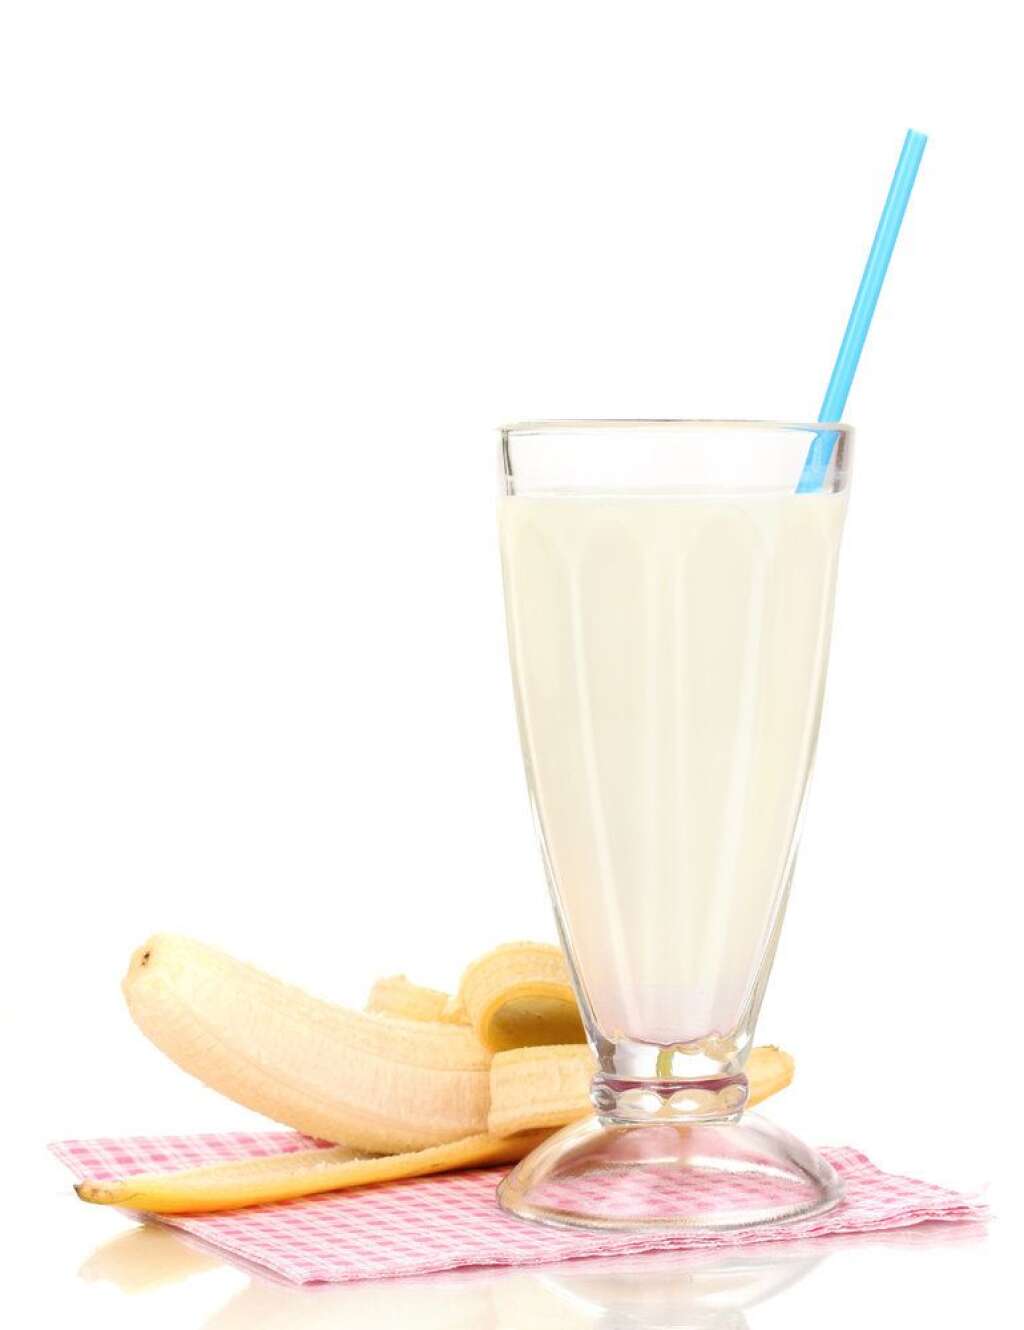 Se faire un smoothie - Pour faire le plein de vitamines, de sucres naturels, et d'antioxydants, préparez-vous un smoothie avec des fruits tels que la banane ou le citron.